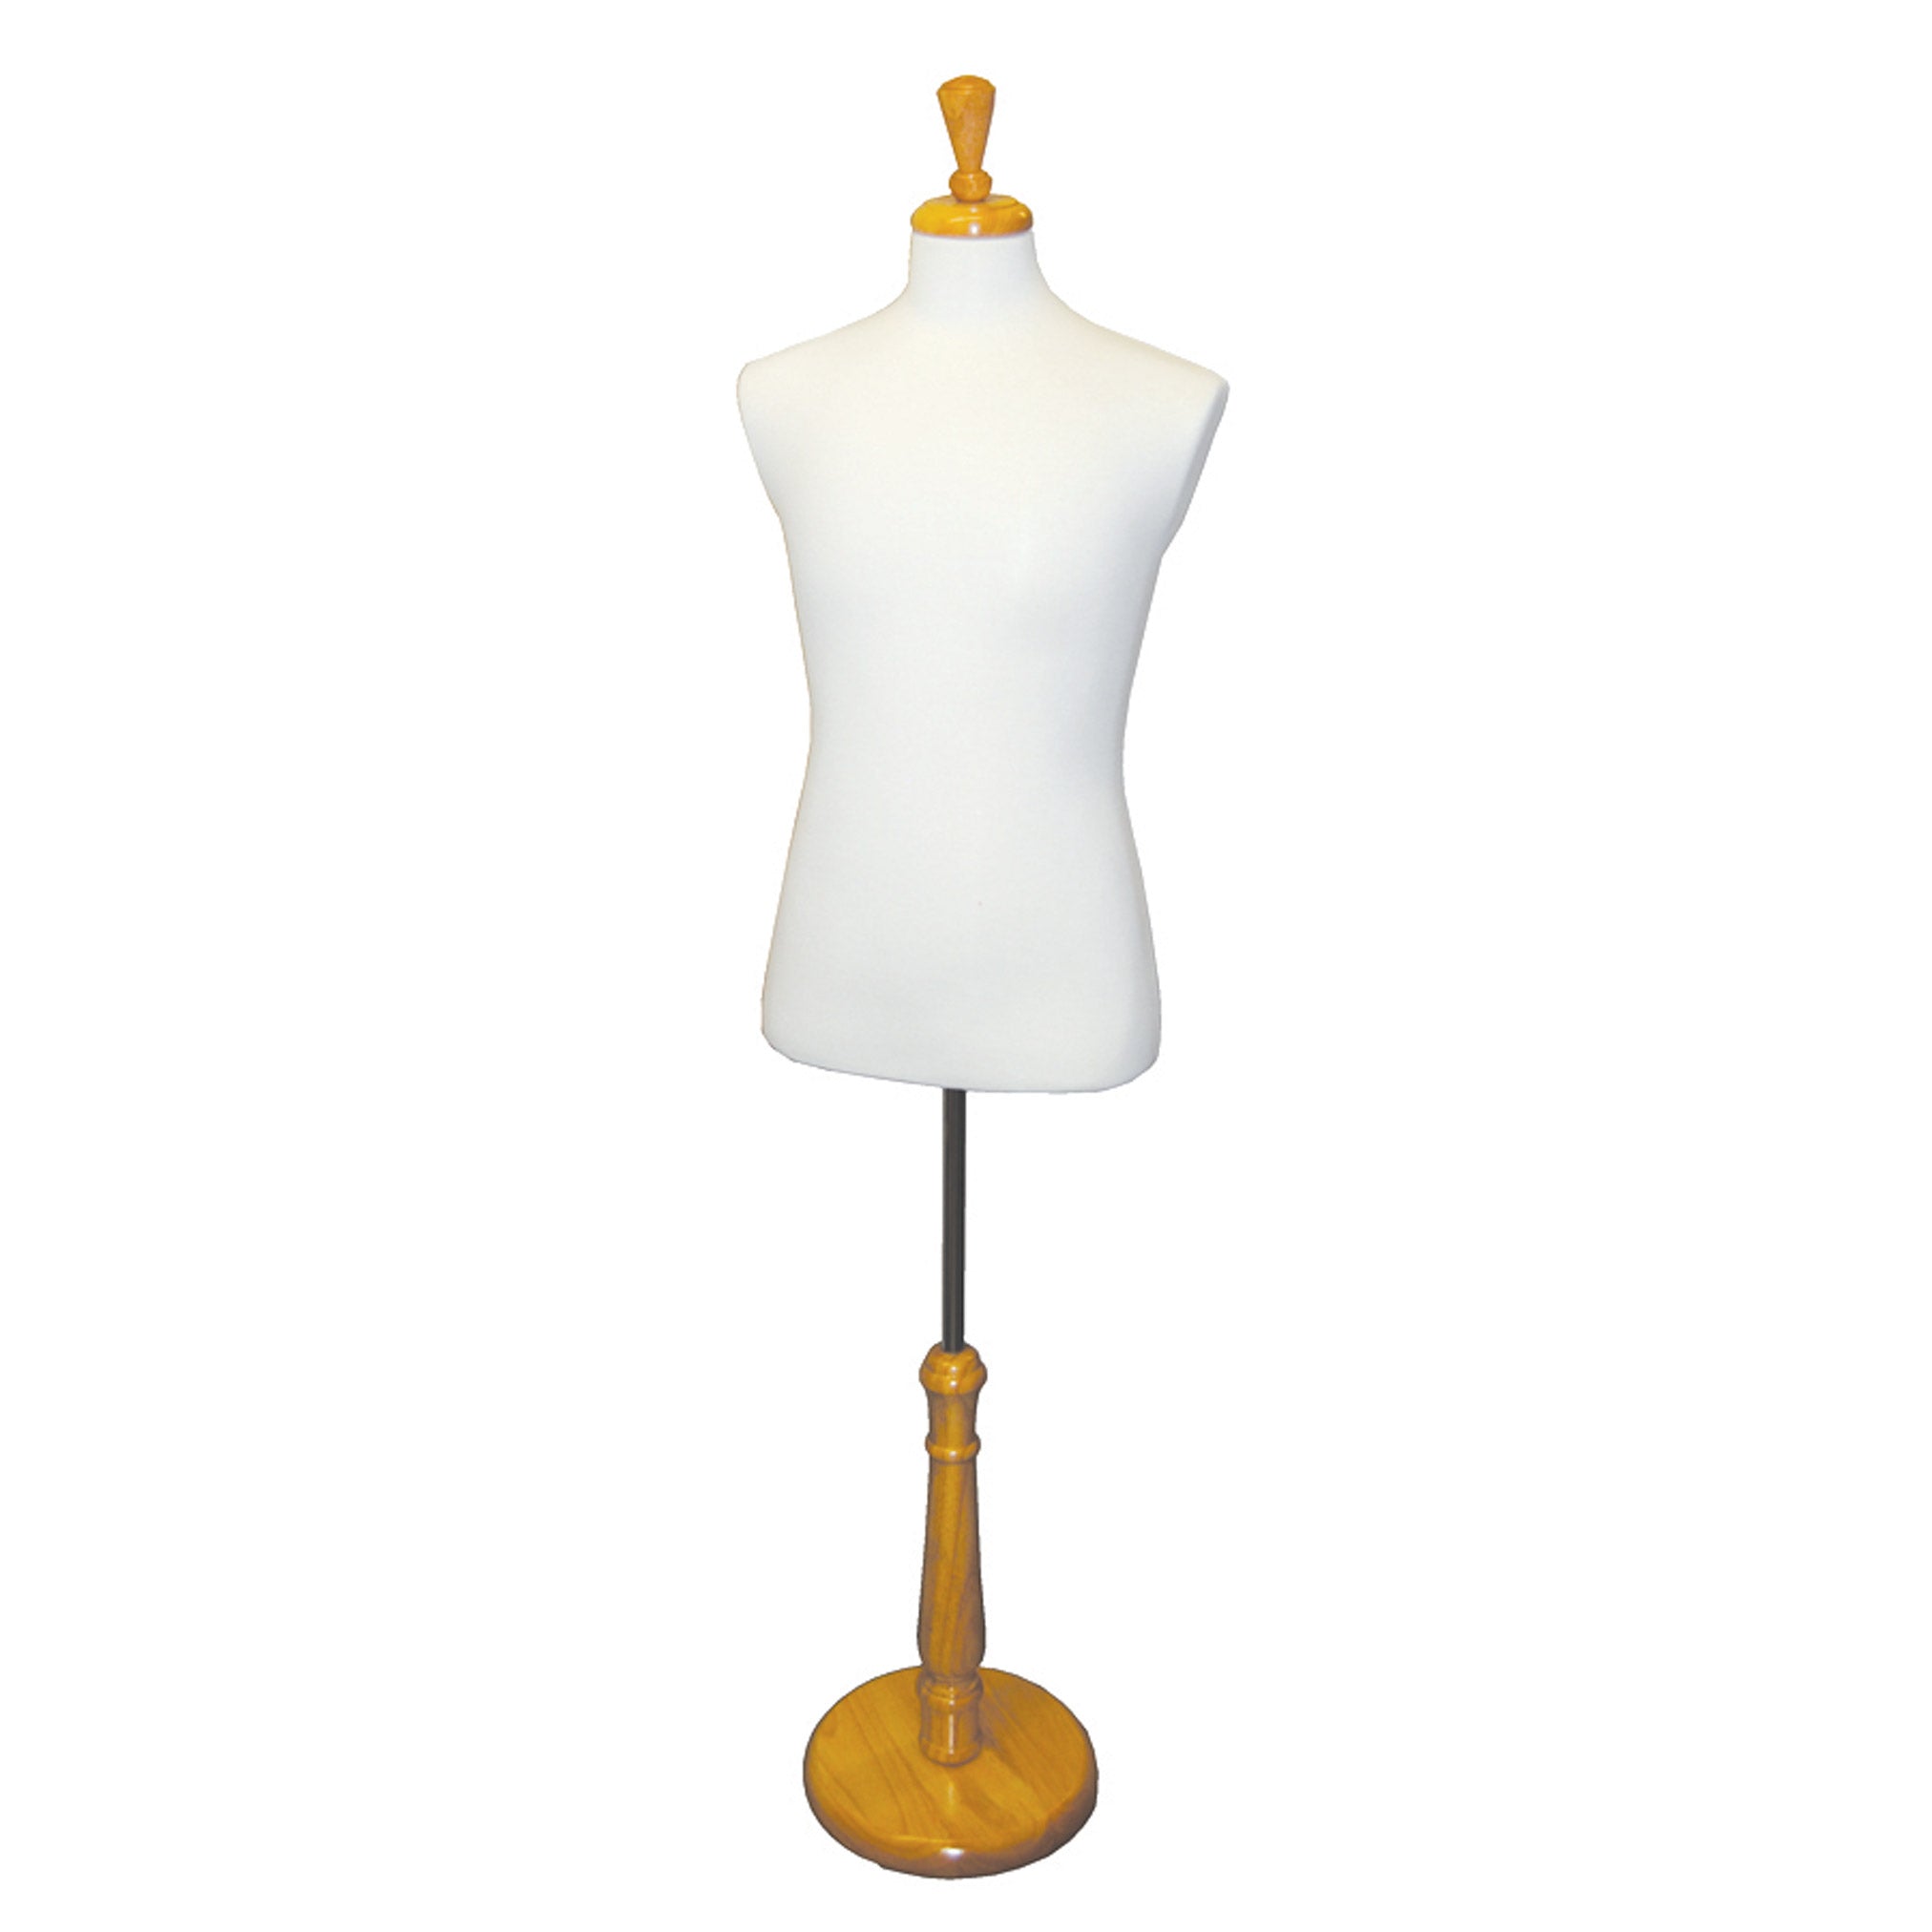 Male Suit Form | Cream Torso | Adjustable Tall Wooden Base | Dressmaker Mannequin - Eddie's Hang-Up Display Ltd.